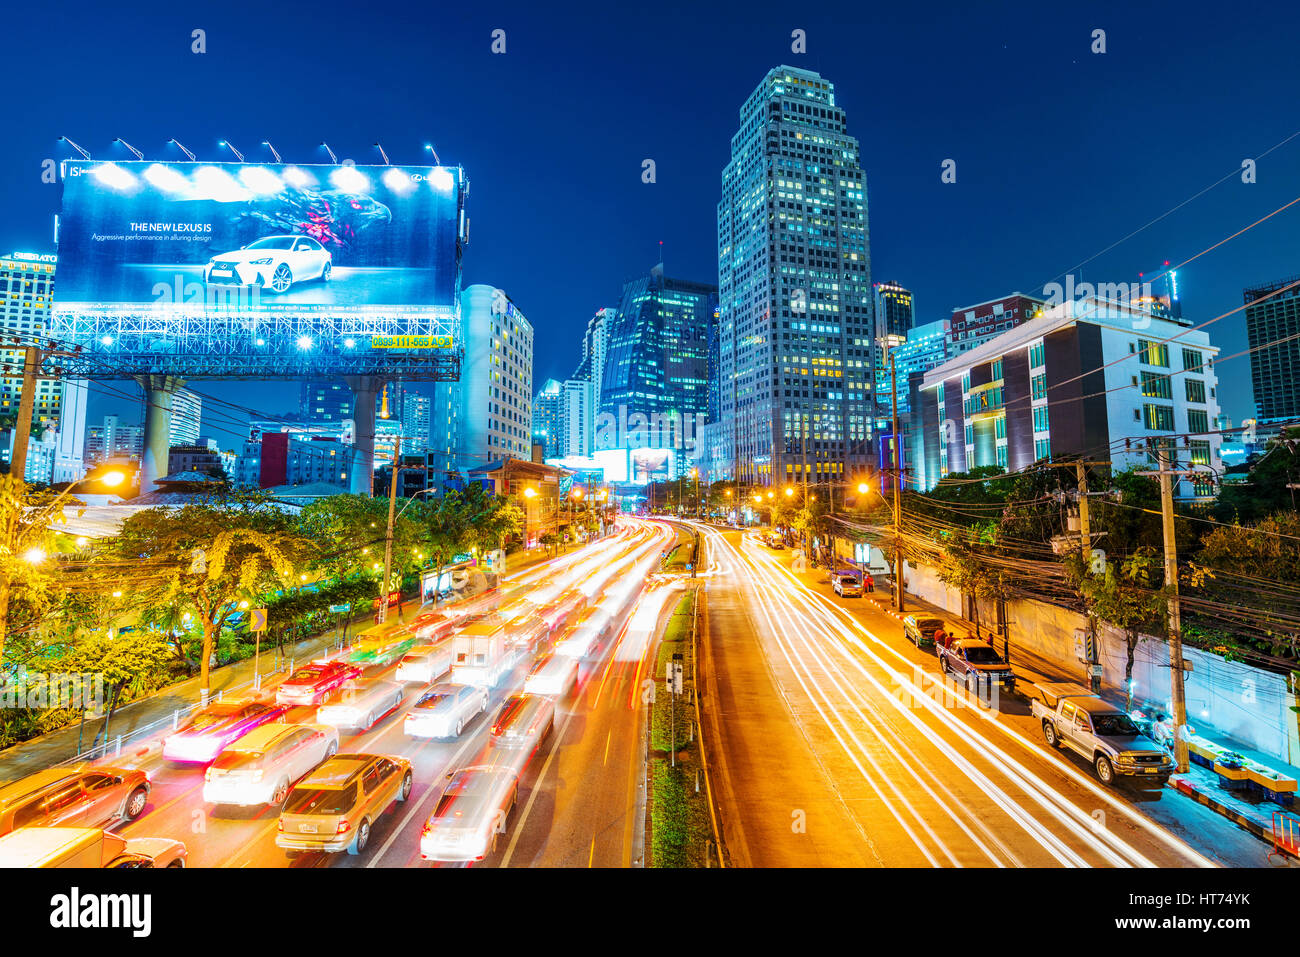 BANGKOK, Tailandia - 01 febbraio: vista notturna del centro cittadino di Bangkok Asoke area. Asoke è una meta turistica molto e la zona business con molti alberghi e skyscrap Foto Stock